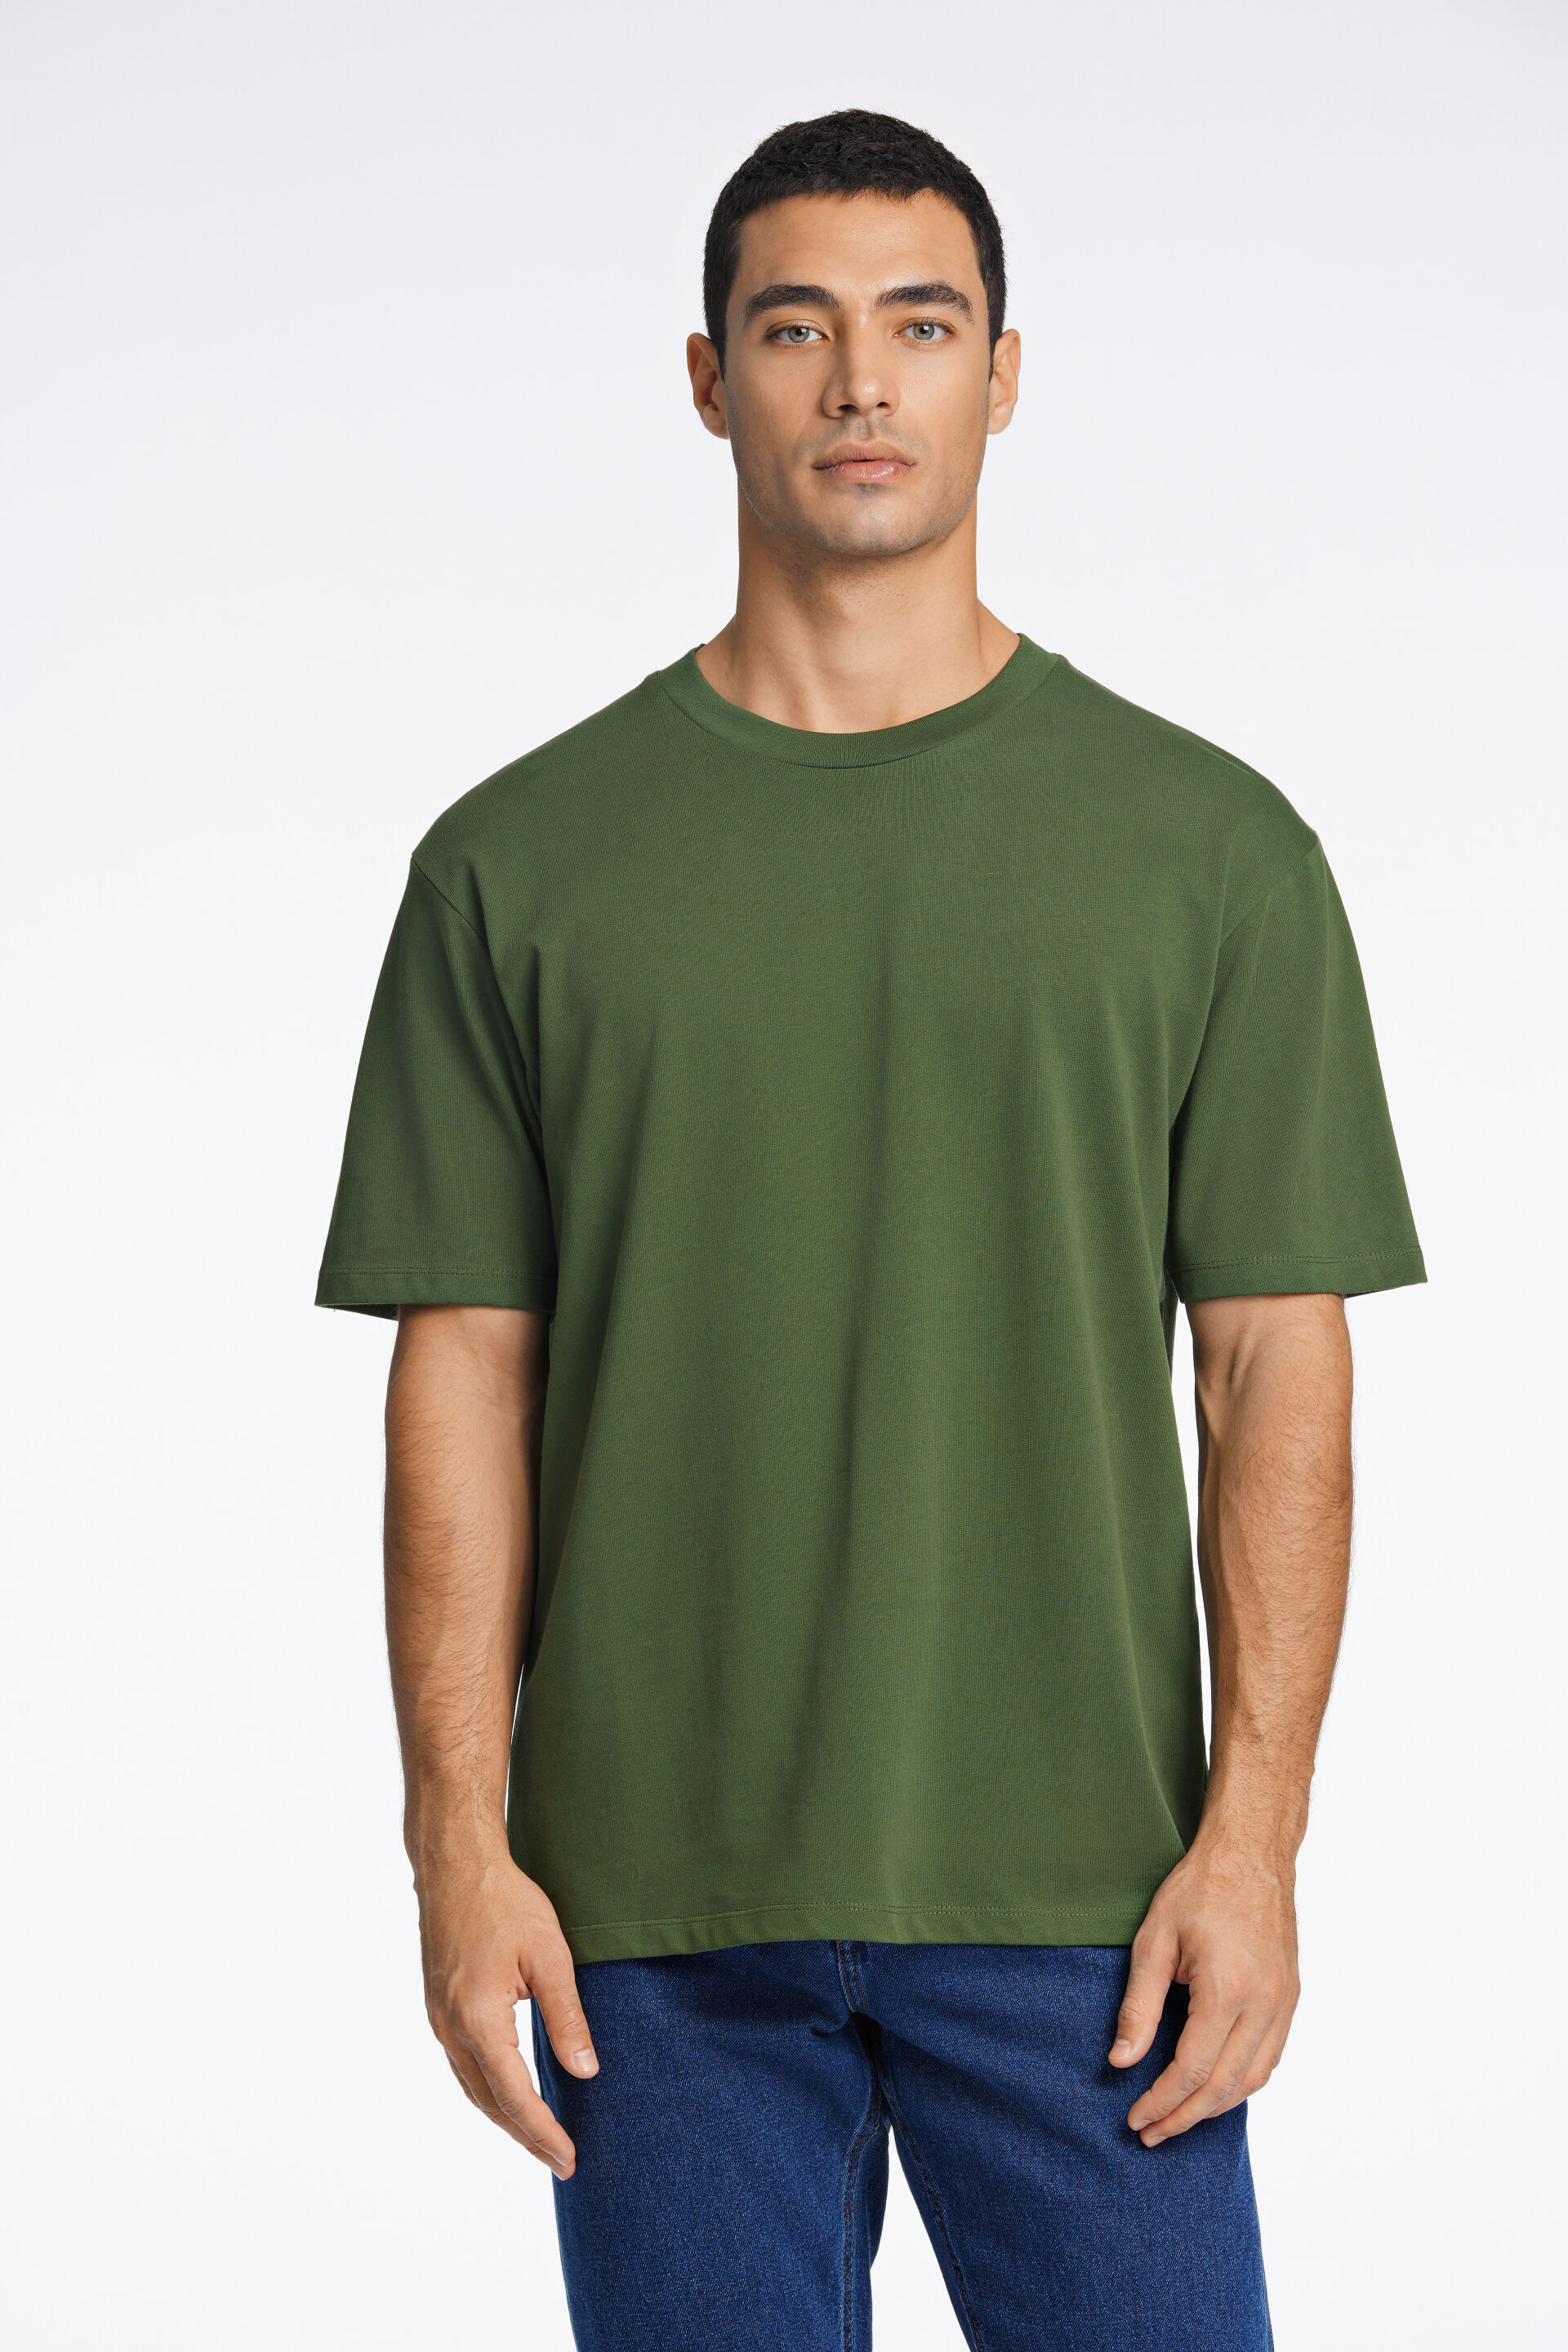 T-shirt T-shirt Grøn 30-400120